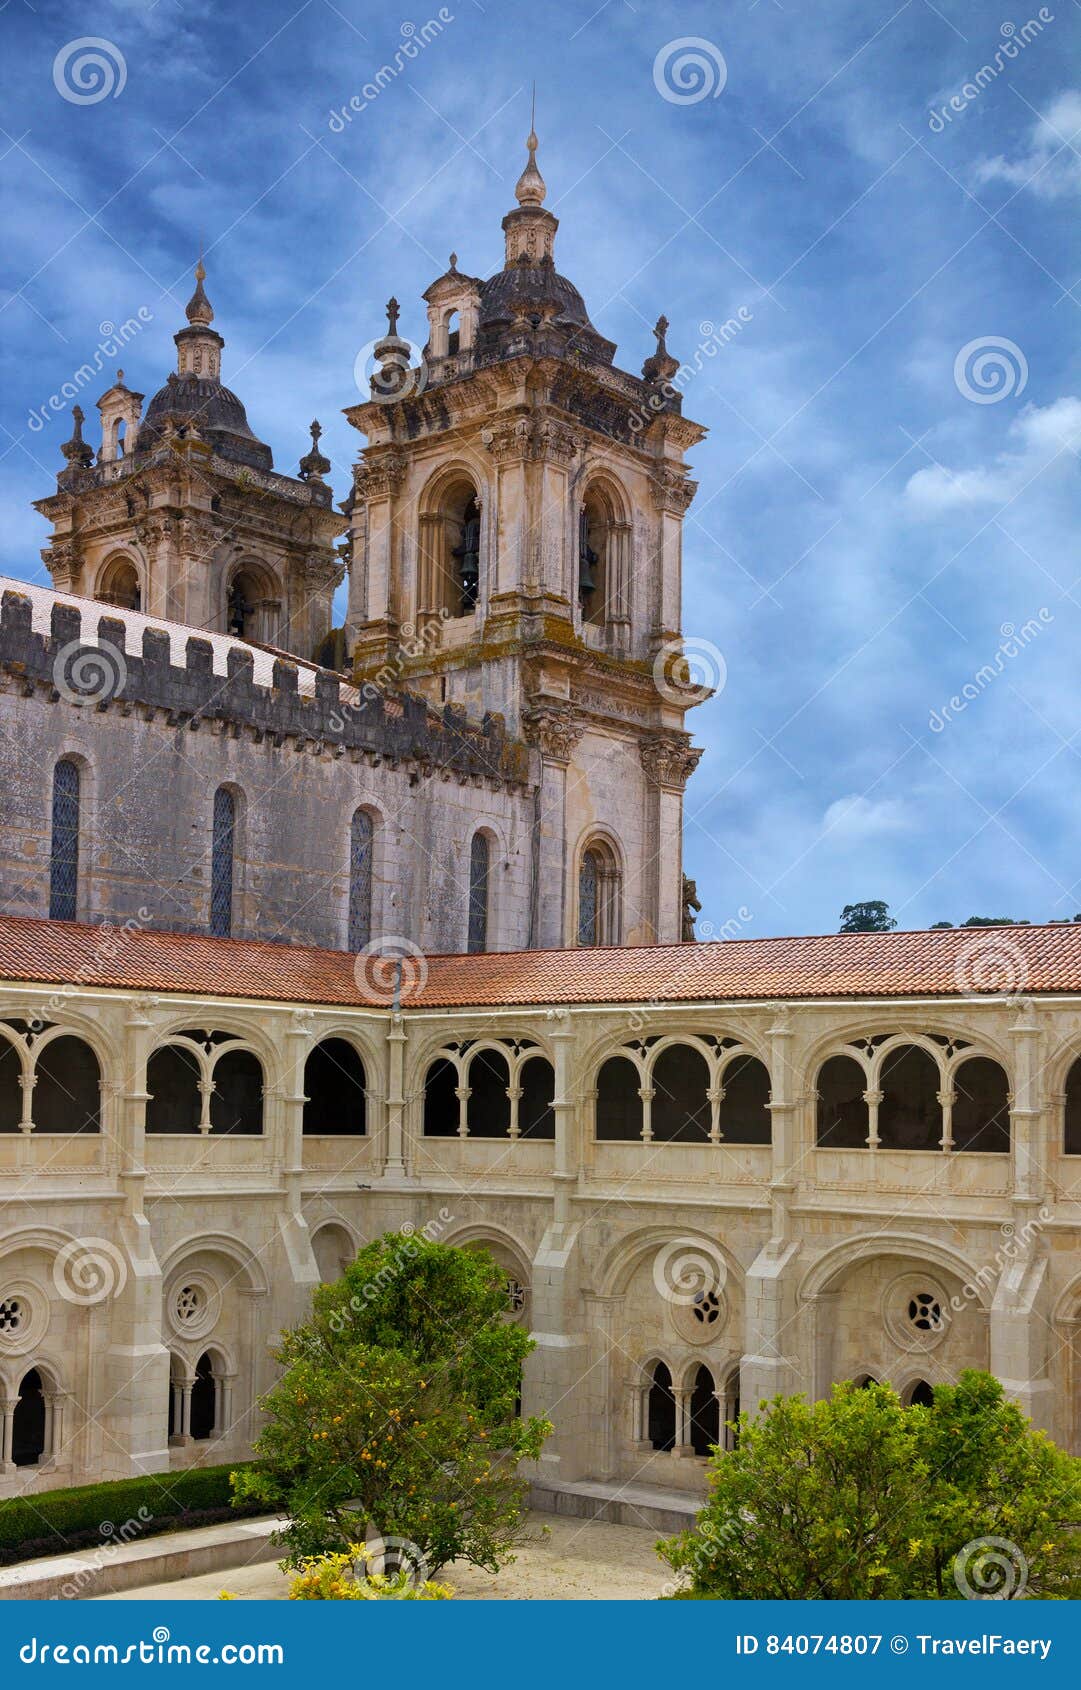 葡萄牙教堂和钟楼的屏幕保护者 图库摄影片. 图片 包括有 照片, 未定义, 有趣, 葡萄牙, 响铃, 教会 - 169619562